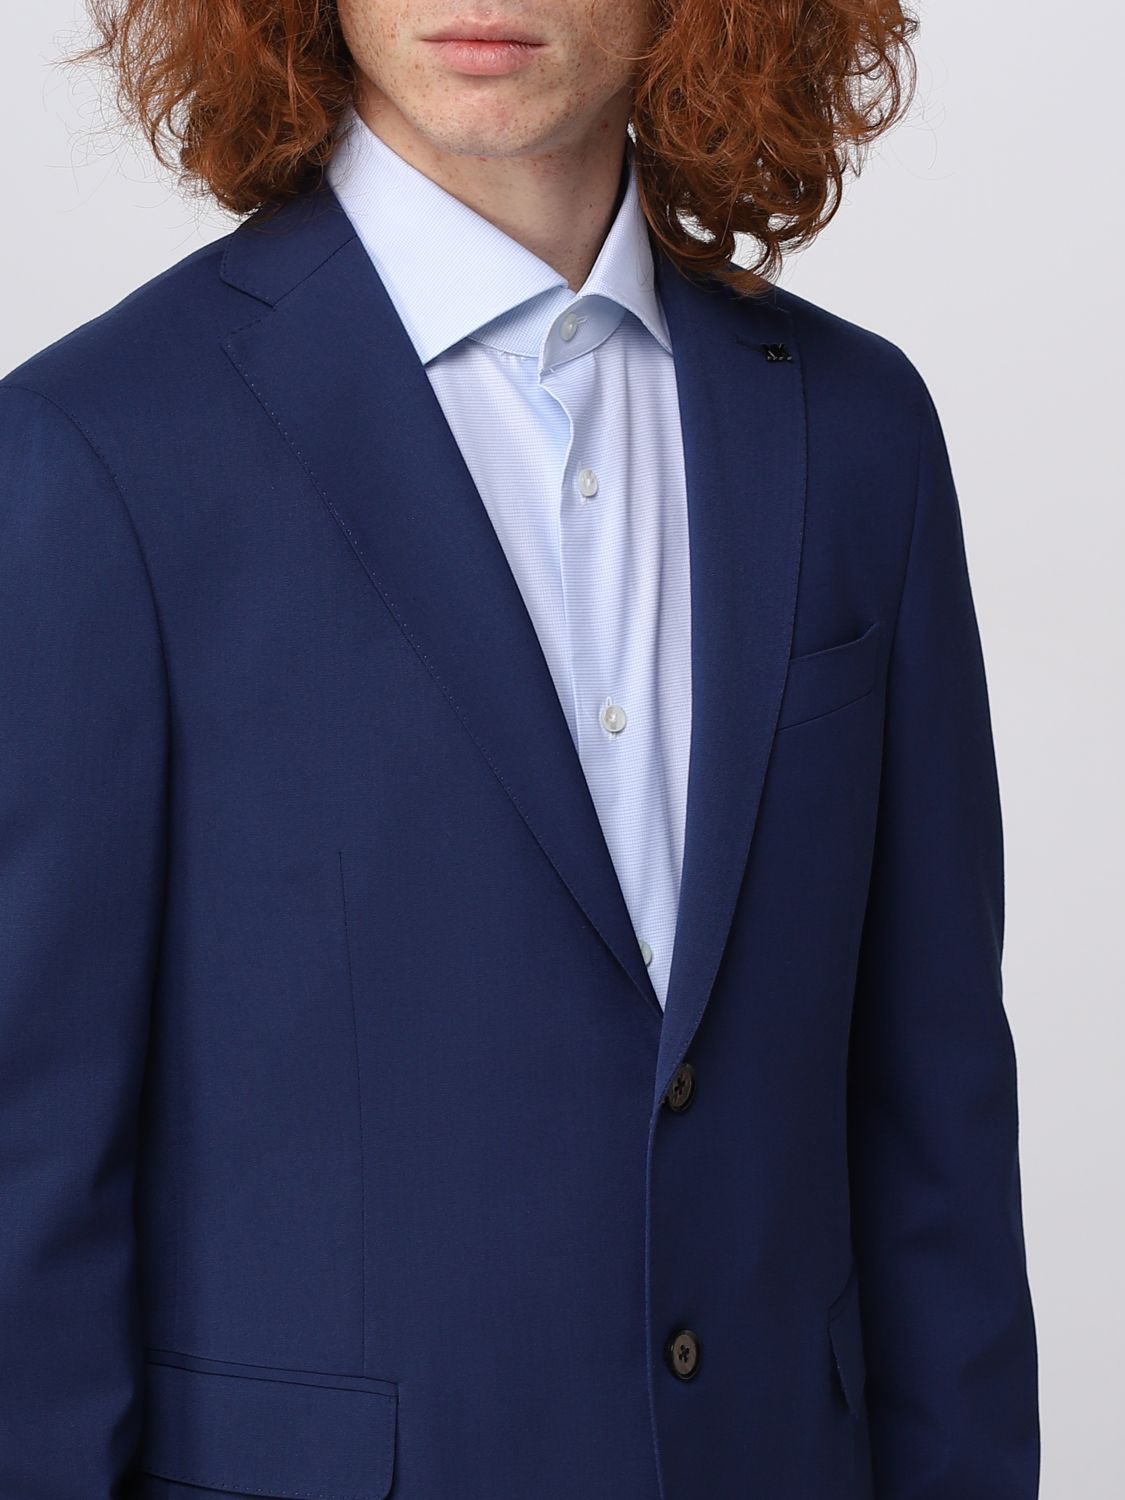 MICHAEL KORS: suit for man - Blue | Michael Kors suit MD0MD91257 online on  